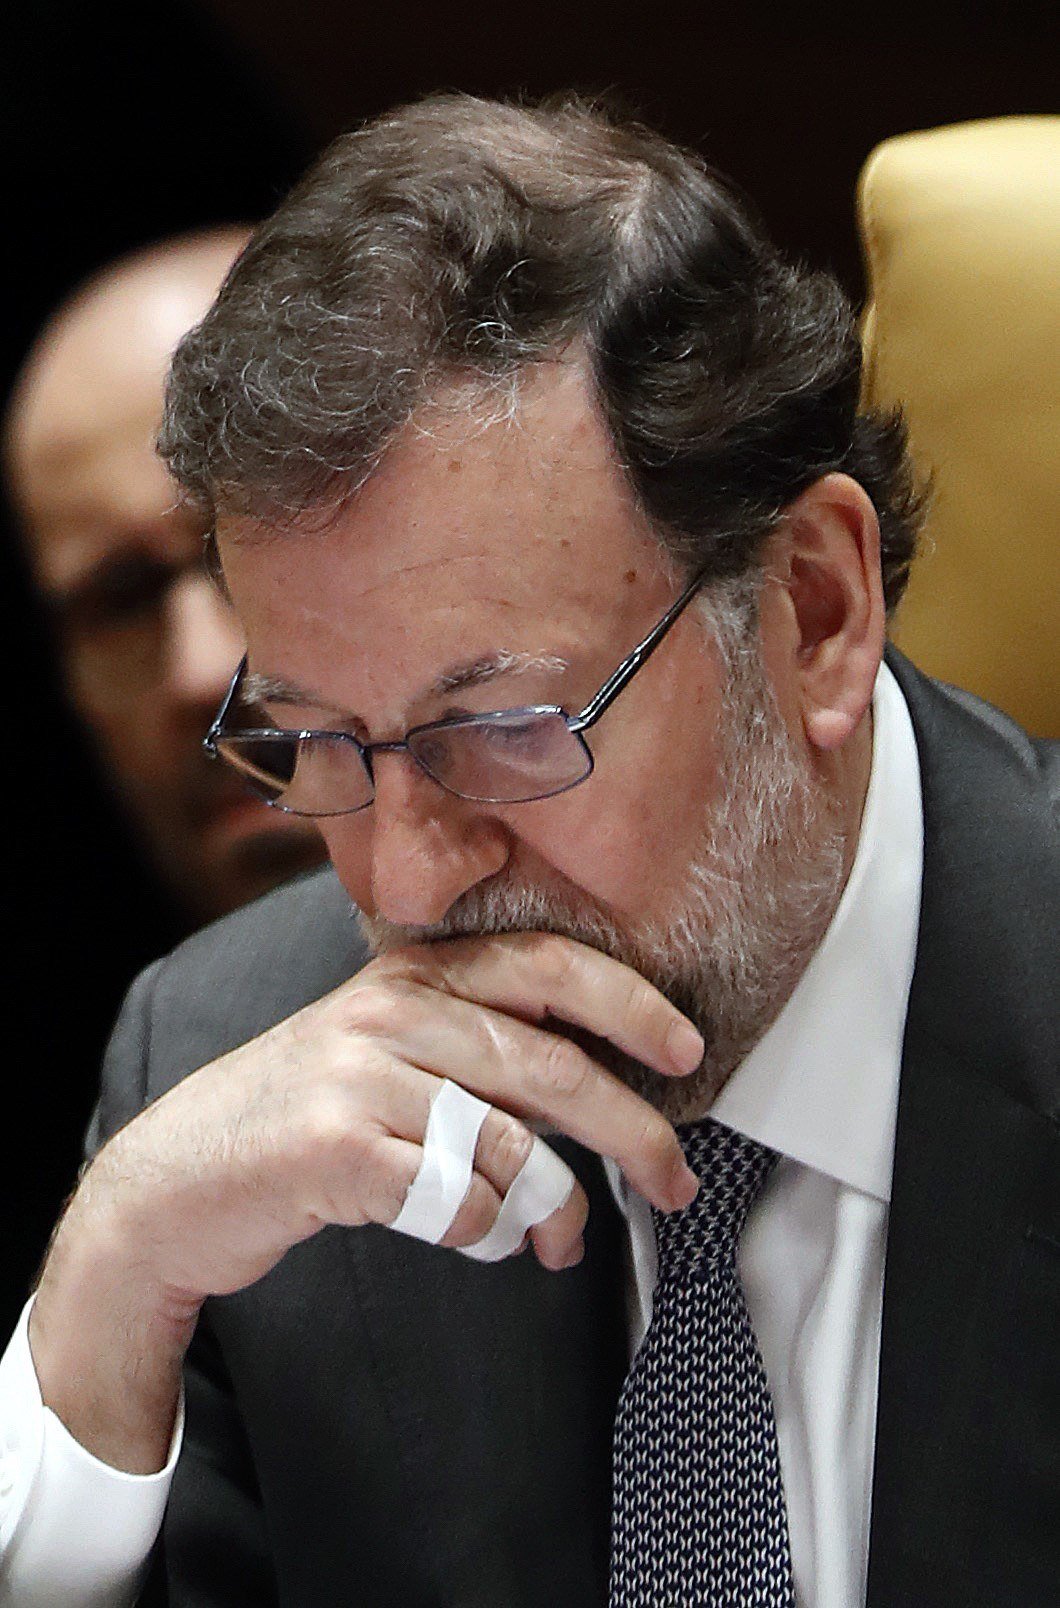 El gobierno de Rajoy: "La justicia española adoptará las medidas adecuadas"